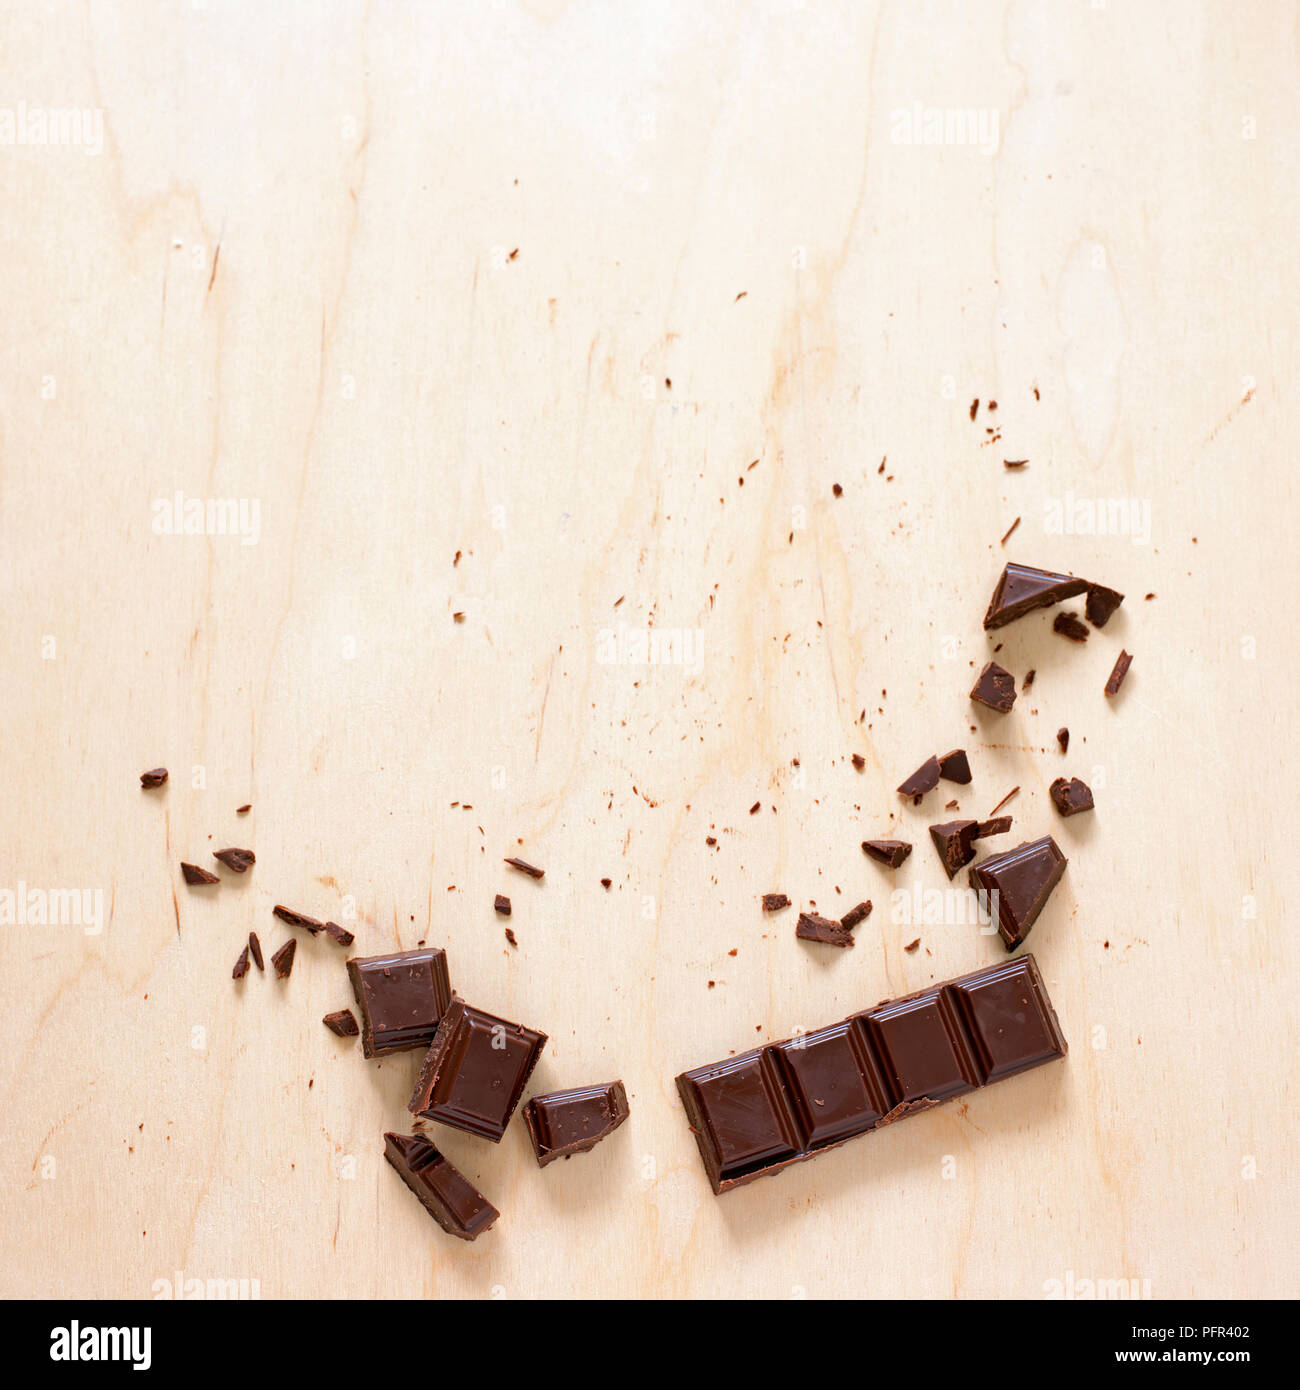 Rota en pedazos de chocolate sobre la superficie de madera Foto de stock